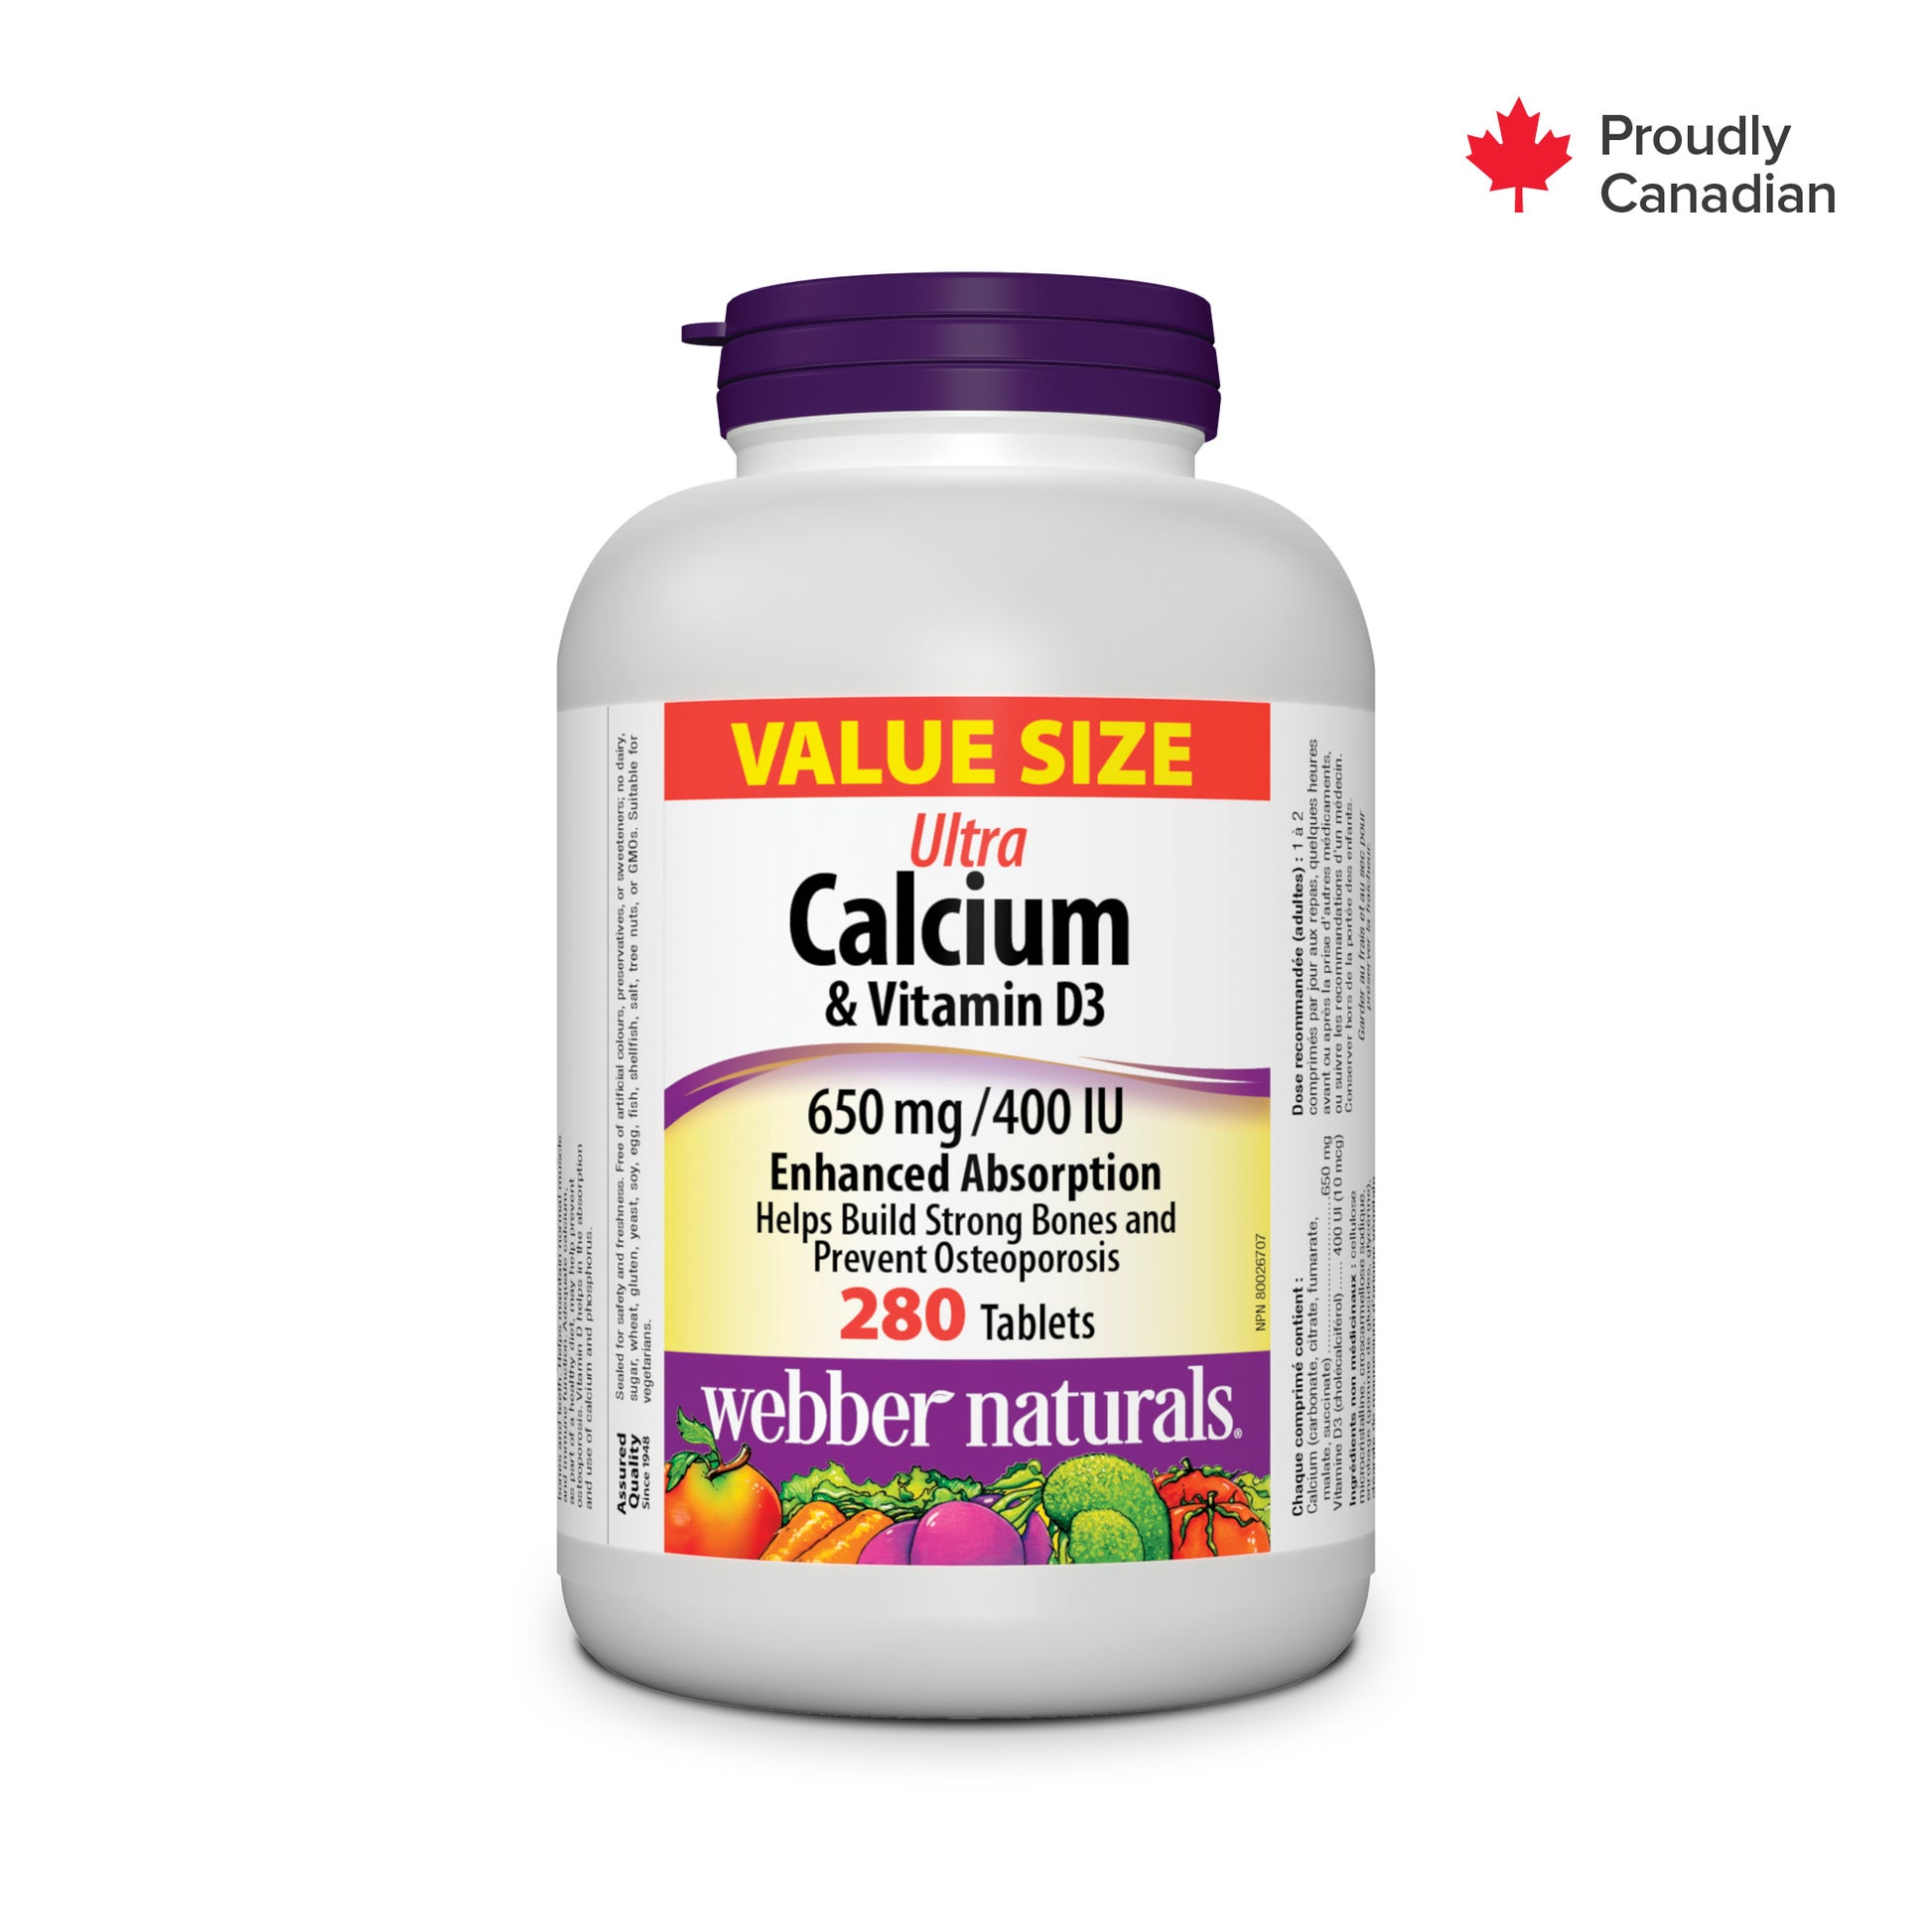 Ultra Calcium et Vitamine D3 Absorption accrue 650 mg / 400 UI  for Webber Naturals|v|hi-res|WN3905